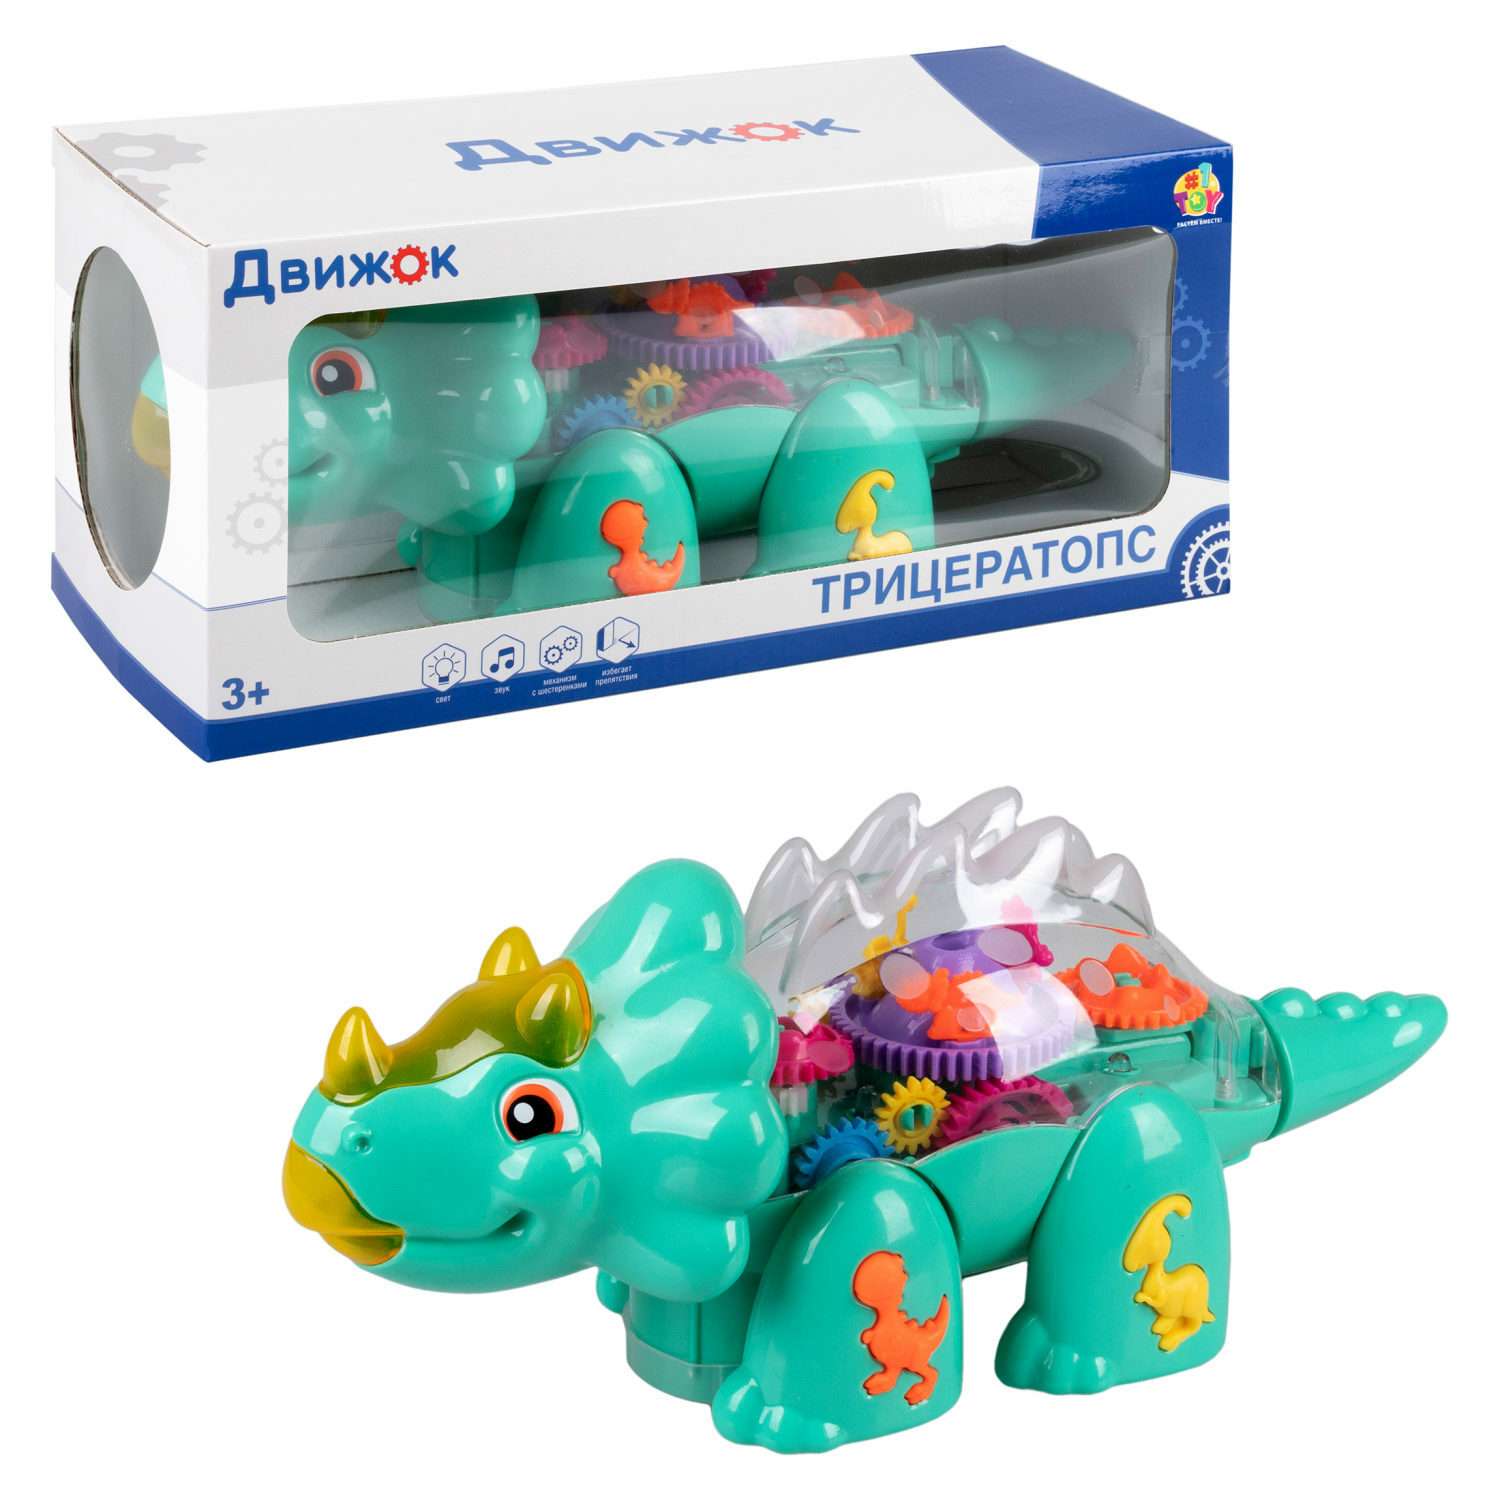 Детская игрушка динозавр 1TOY трицератопс Движок прозрачная с шестеренками со светом и звуком - фото 1